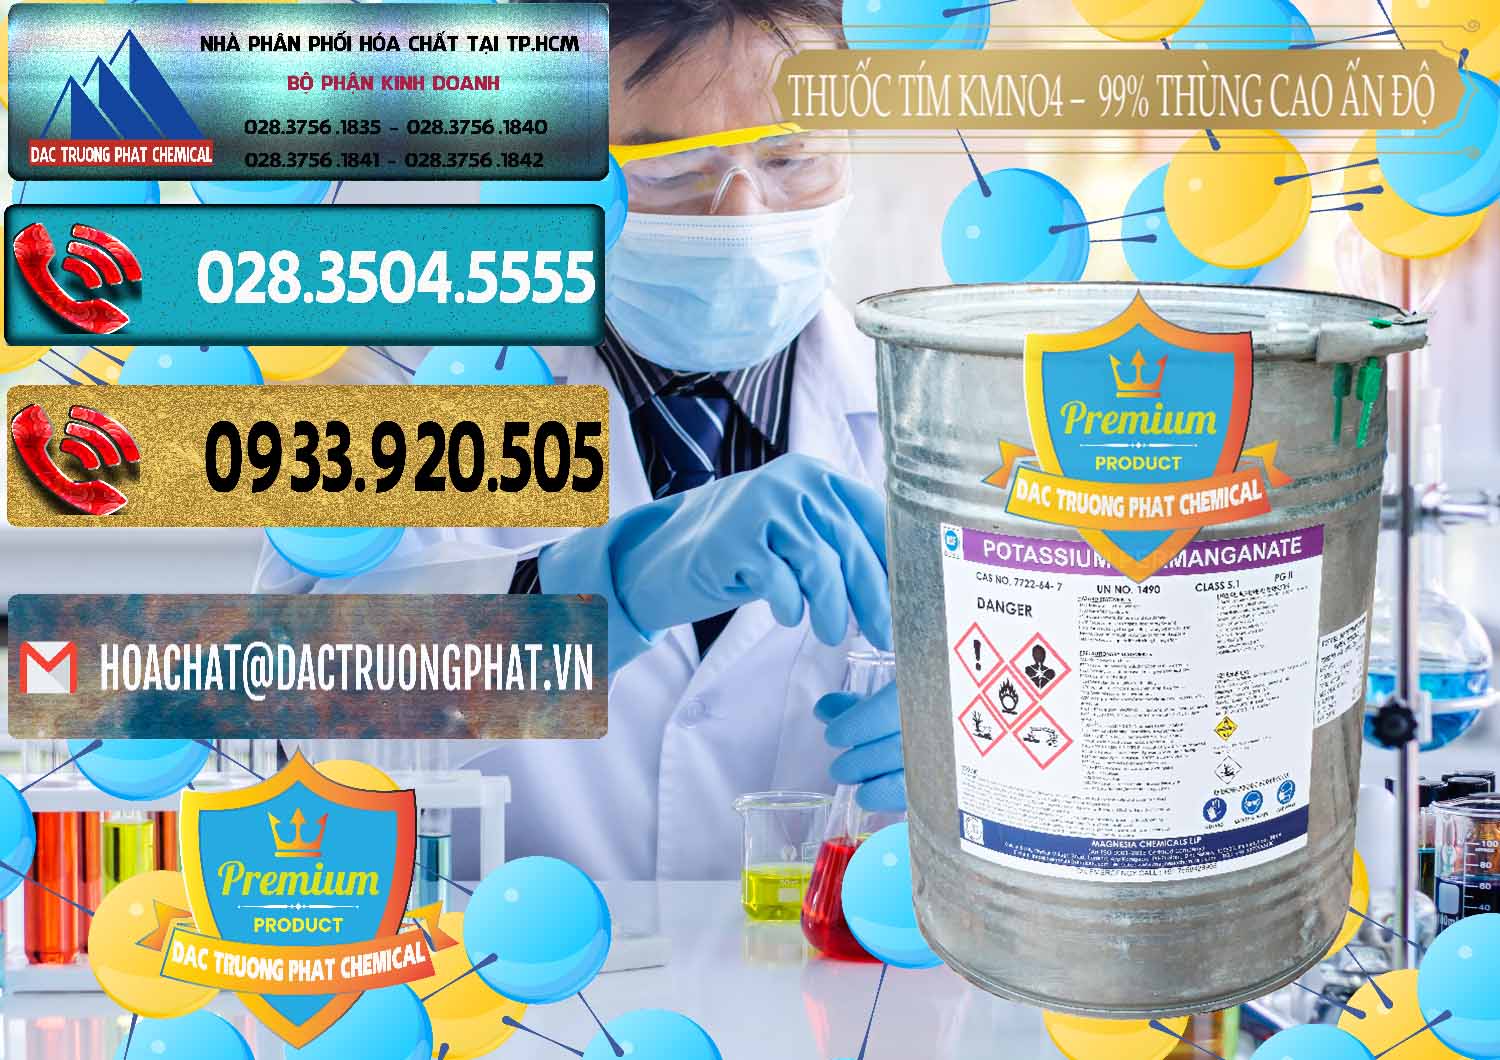 Công ty chuyên cung ứng và bán Thuốc Tím - KMNO4 Thùng Cao 99% Magnesia Chemicals Ấn Độ India - 0164 - Cty kinh doanh và phân phối hóa chất tại TP.HCM - hoachatdetnhuom.com